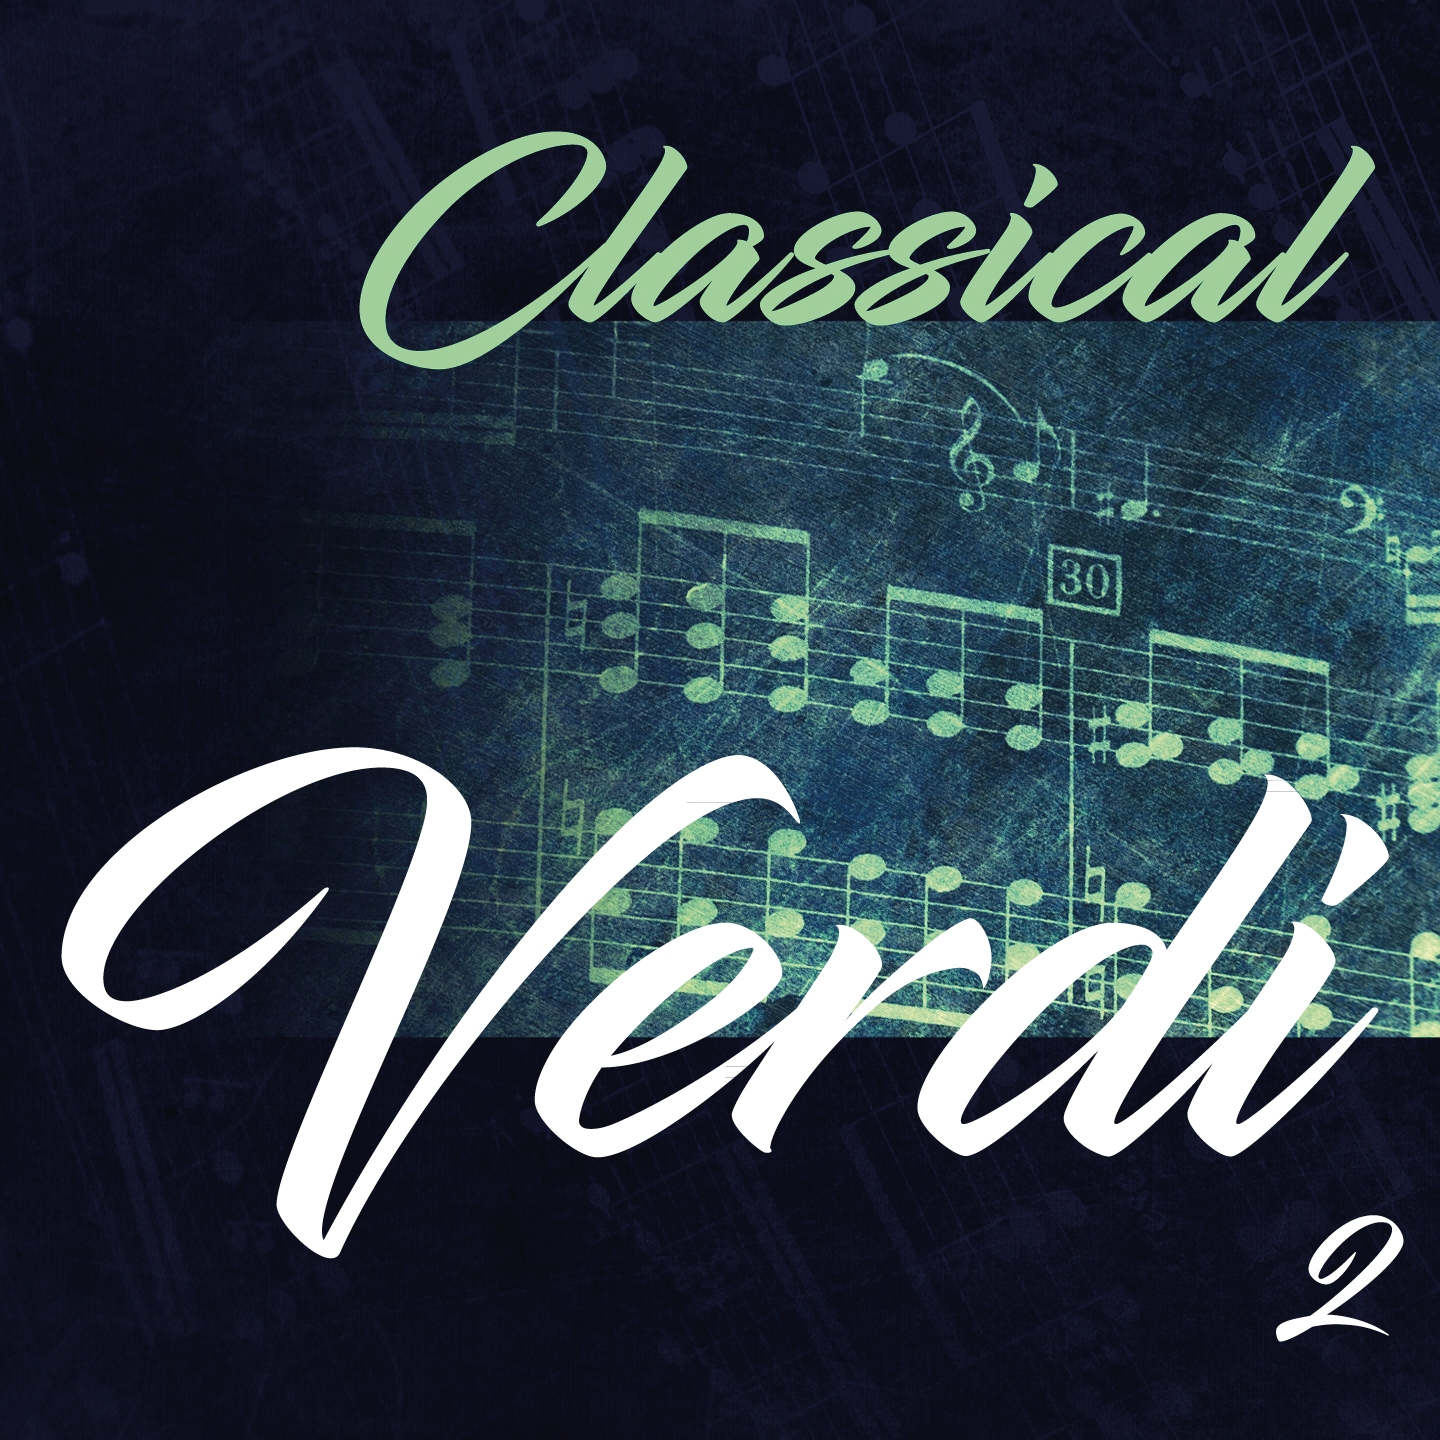 Classical Verdi 2